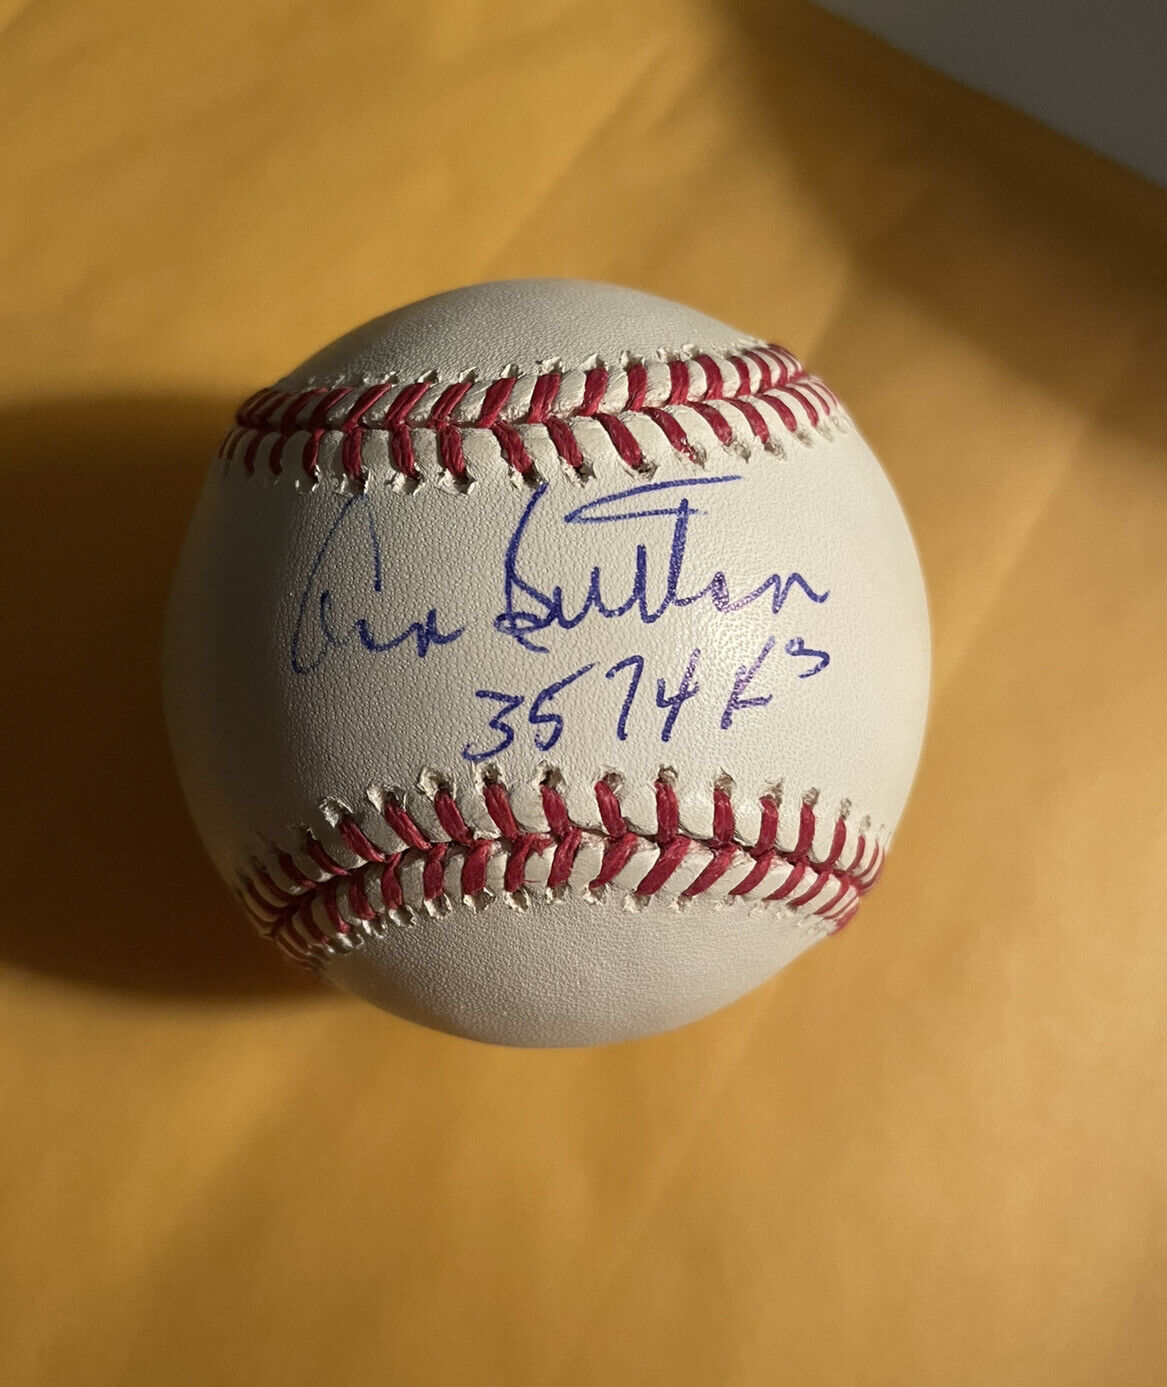 DON SUTTON Signed OML MLB Baseball 3574 K’s HOF 1998 Los Angeles Dodgers Braves